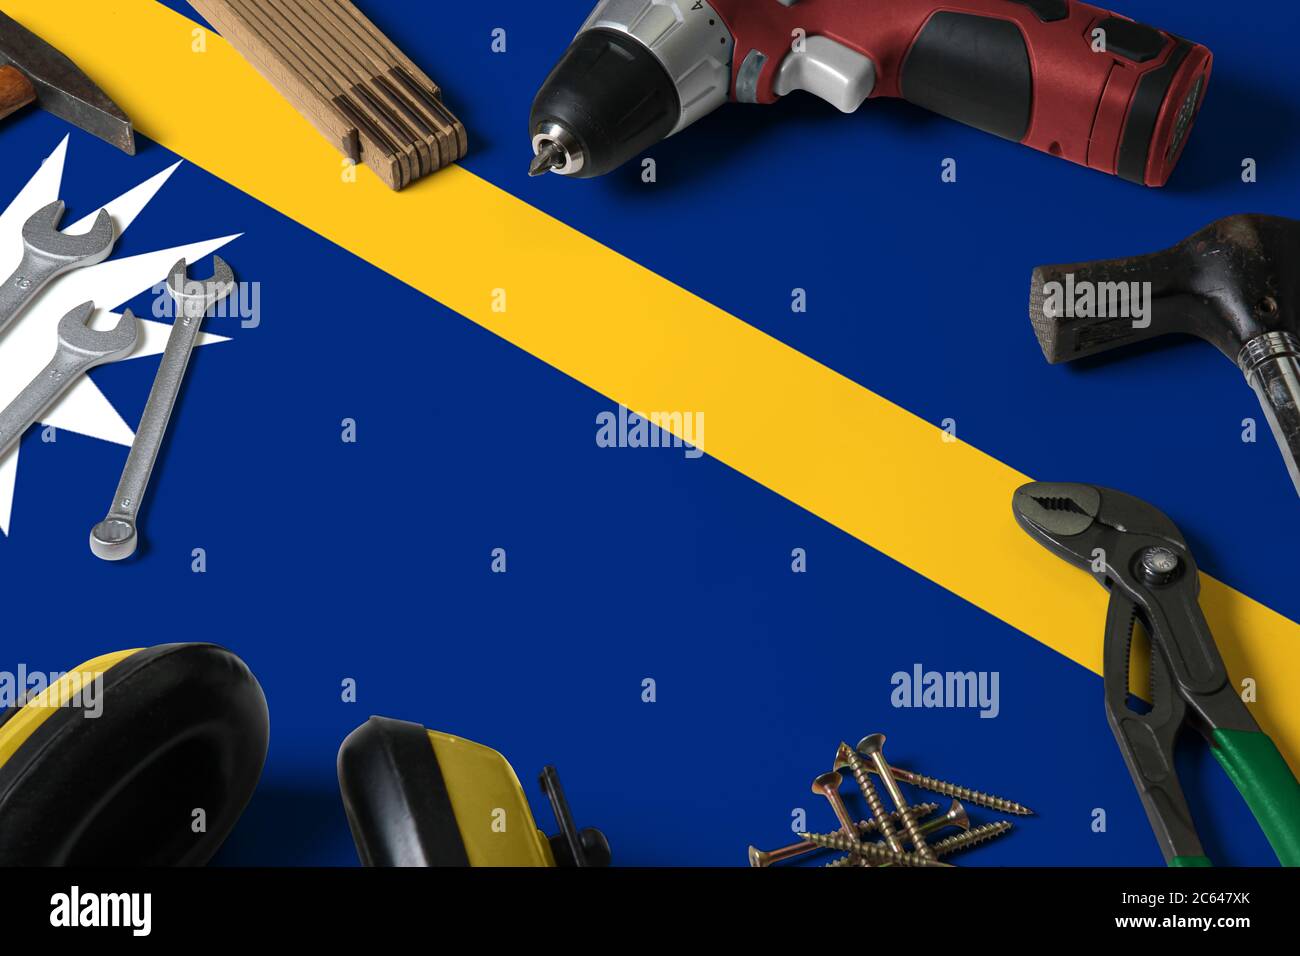 Nauru Flagge auf Reparatur-Tool Konzept Holztisch Hintergrund. Mechanisches Service-Thema mit nationalen Objekten. Stockfoto